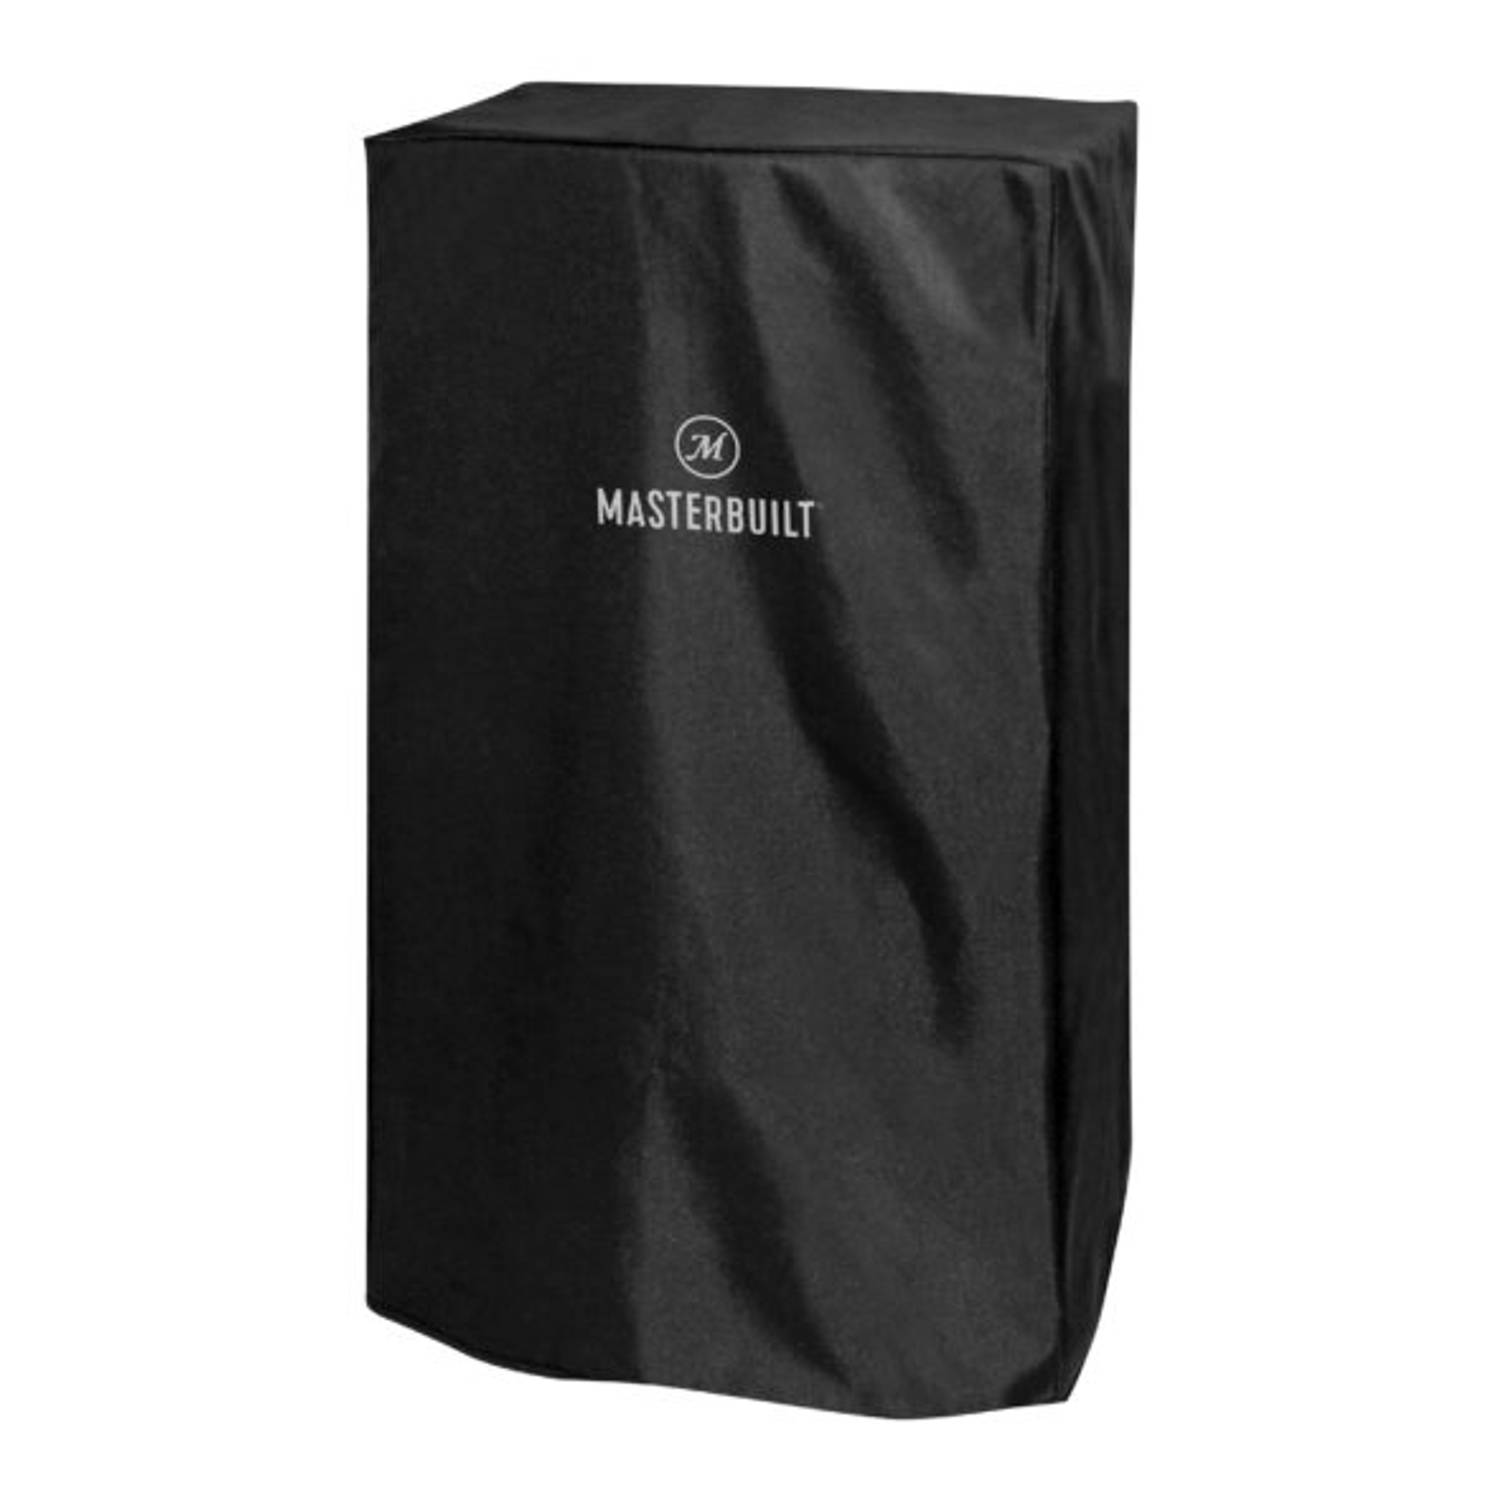 Masterbuilt Beschermhoes voor MES 140 Elektrische Smoker - Zwart - Afmetingen hoes: 62,5 cm B x 42,9 cm D x 98 cm H